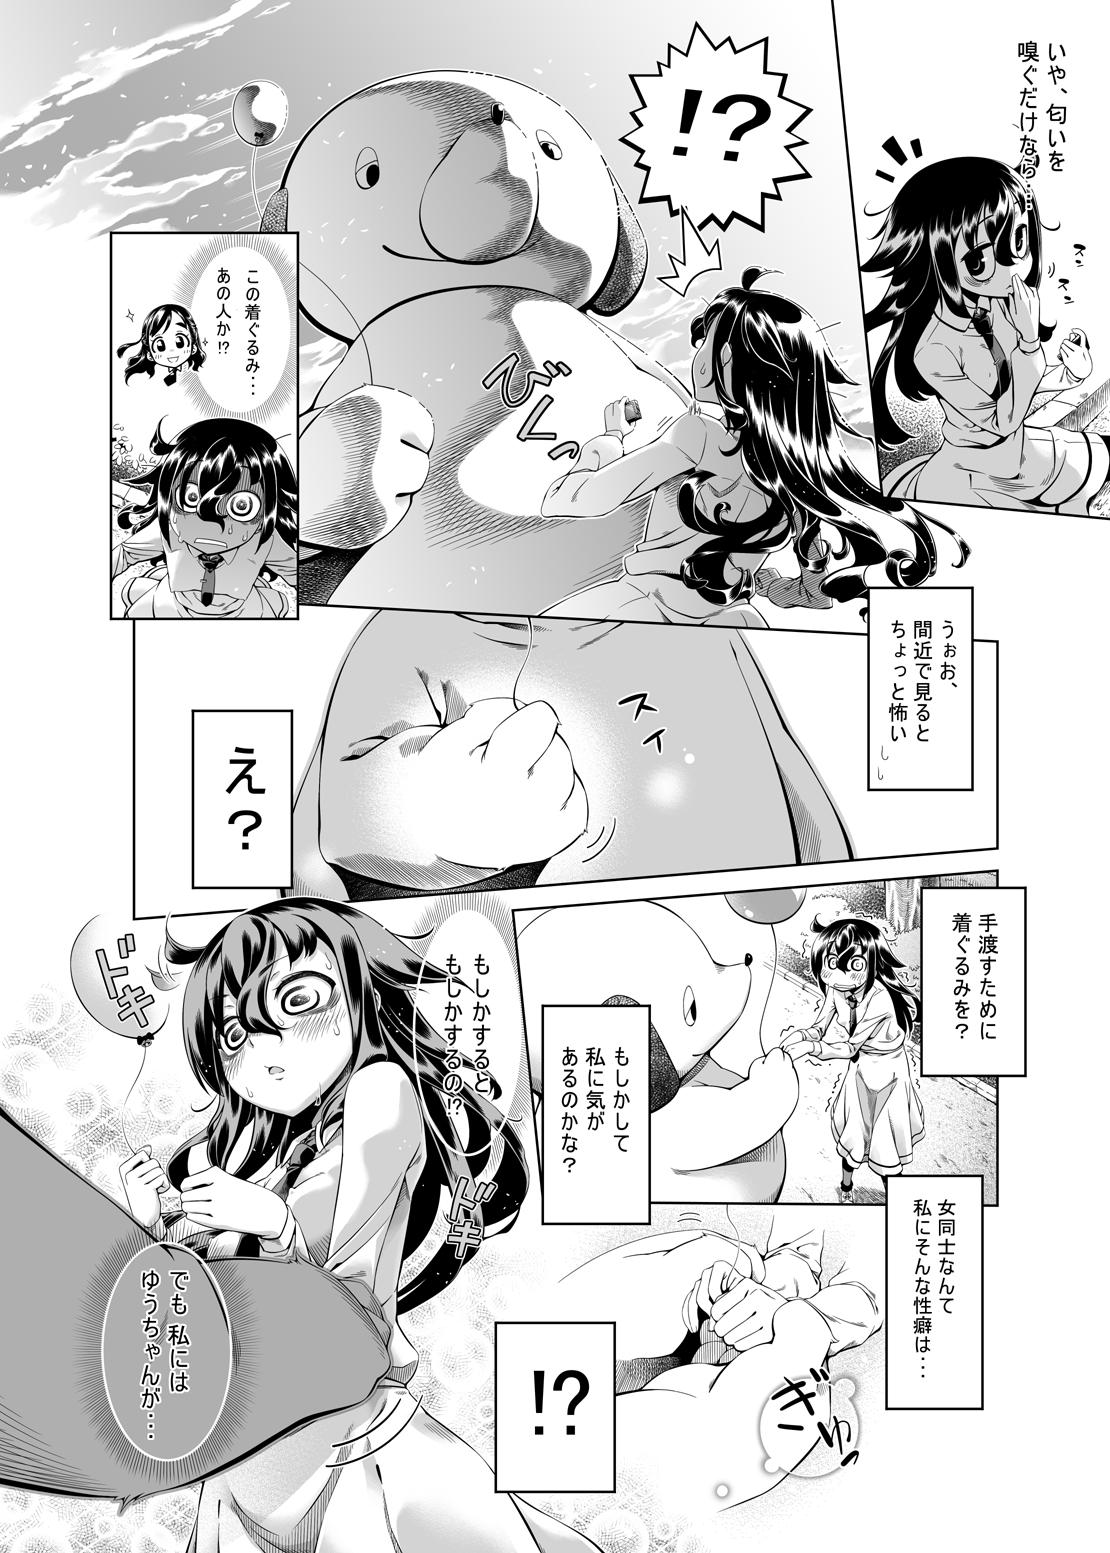 Small Boobs Watashi ga Kimashita no wa dou Kangaete mo Senpai ga Warui! - Its not my fault that im not popular Girl - Page 3